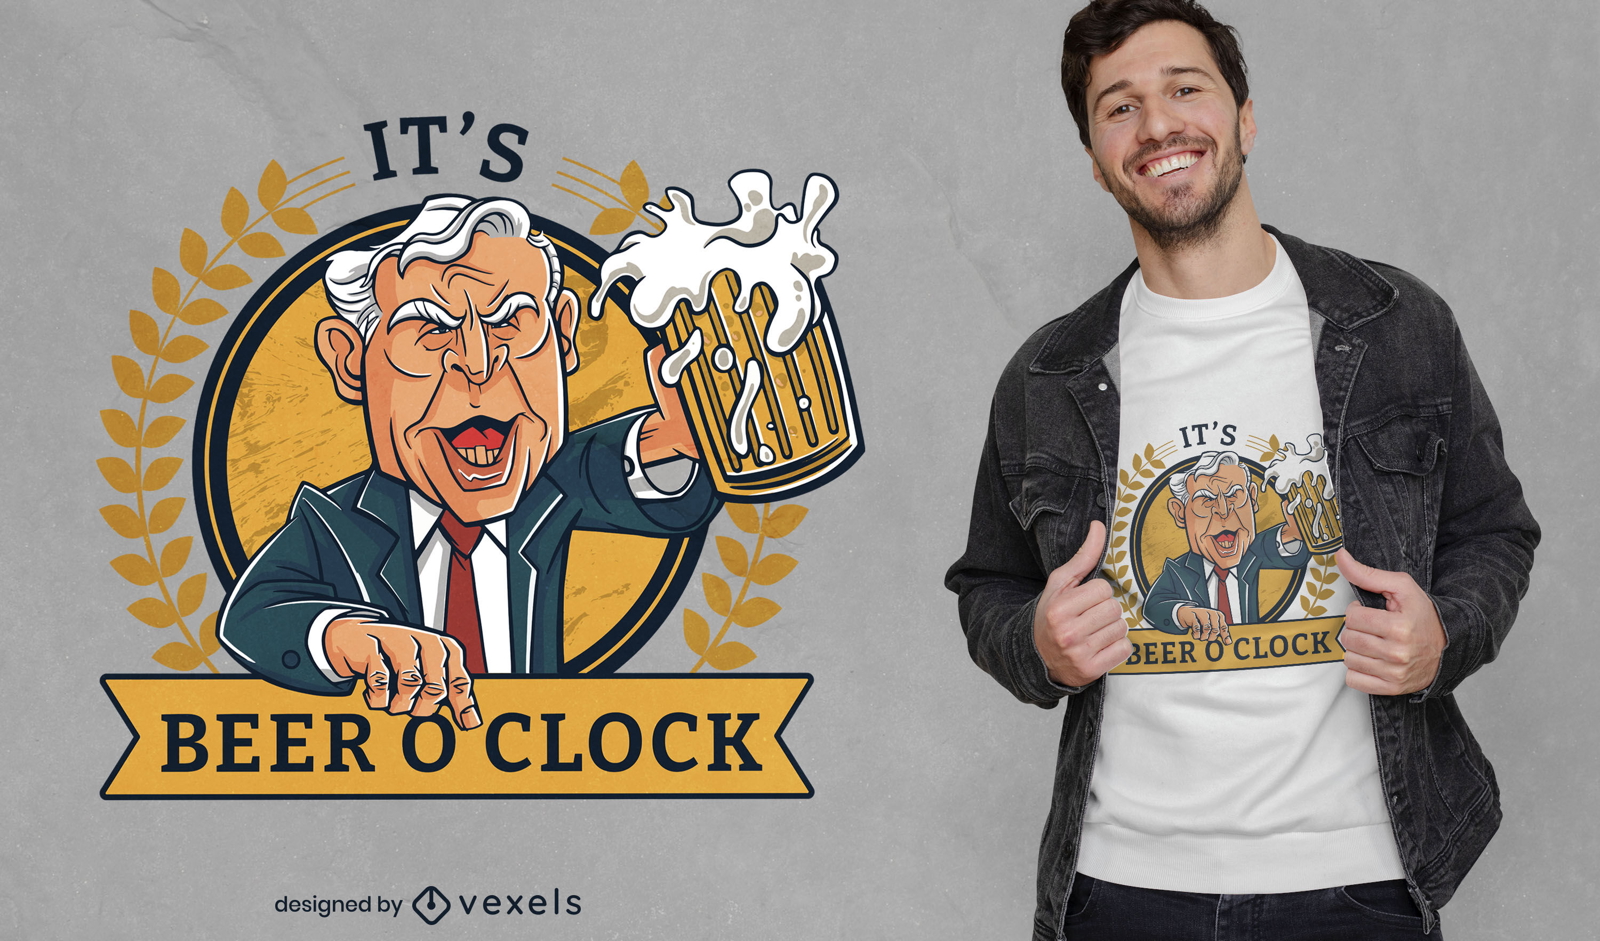 Beer o' clock man t-shirt design